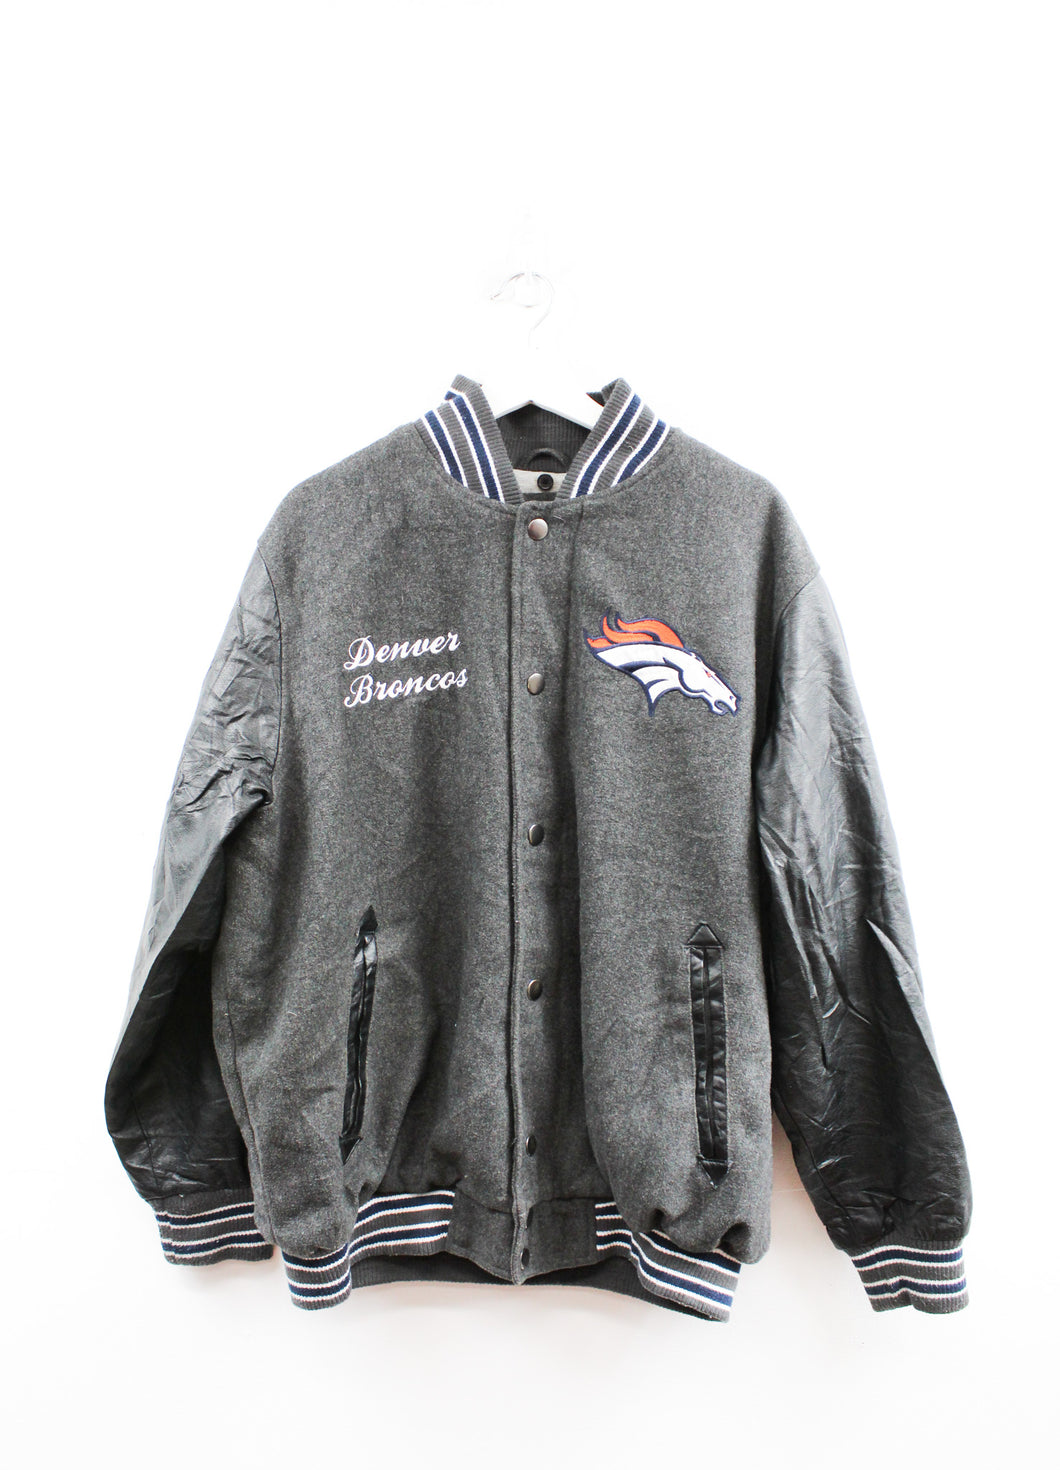 Vintage NFL Denver Broncos Zip Up Varsity Jacket